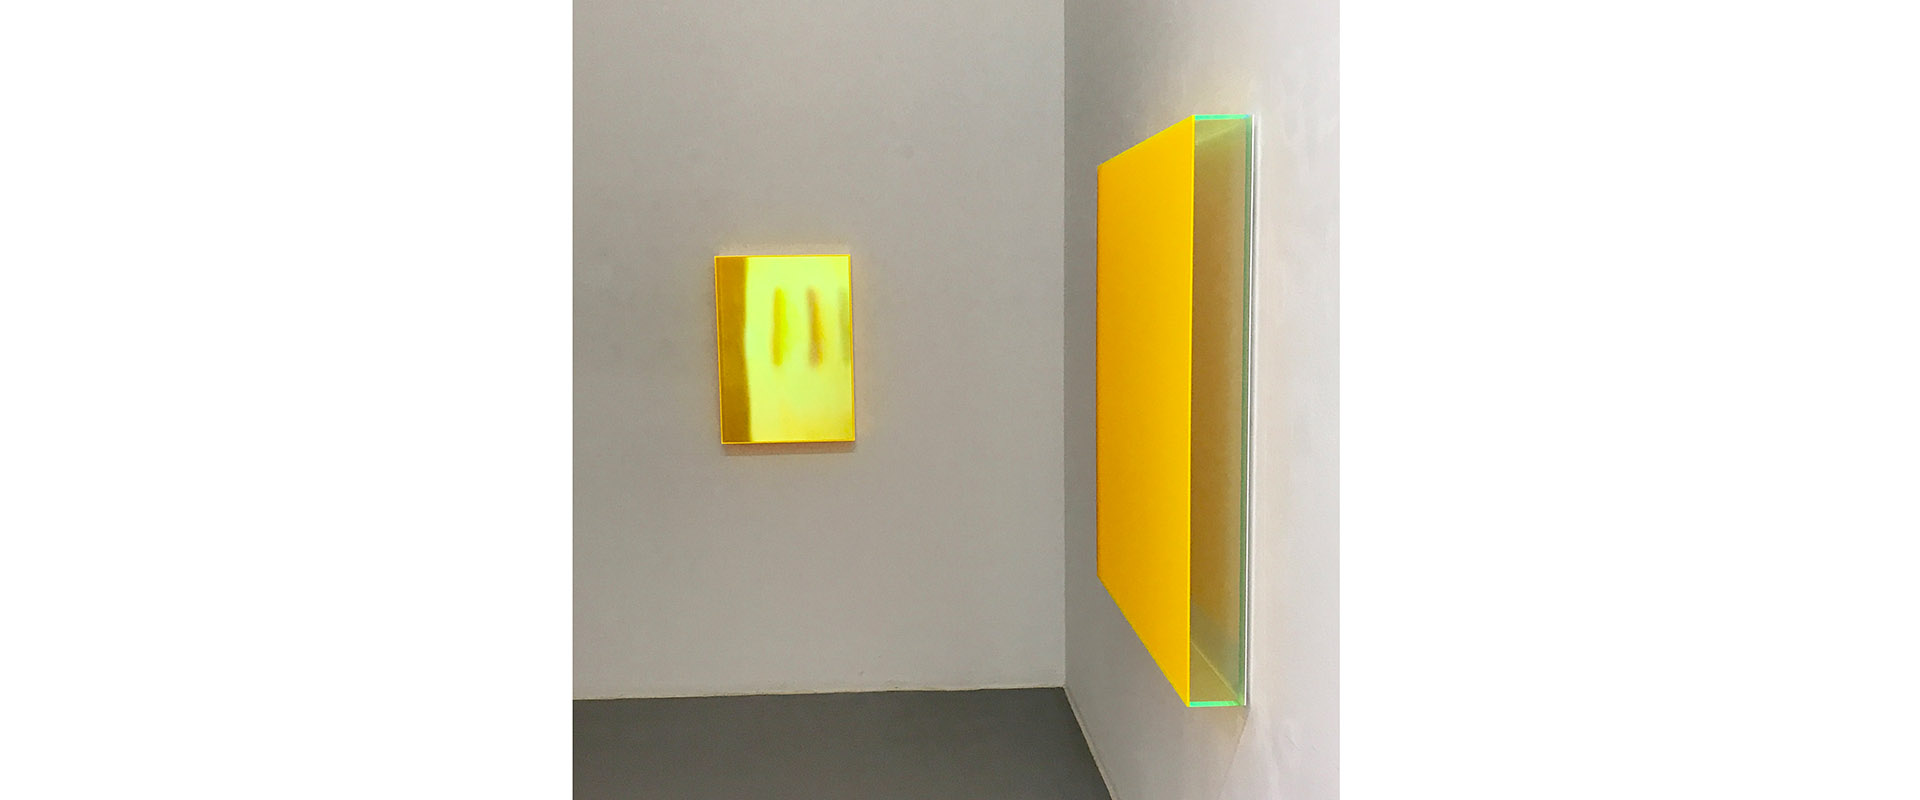 Ausstellungsansicht "High Frequencies". Regine Schumann - Jus Juchtmans, Galerie Renate Bender 2018